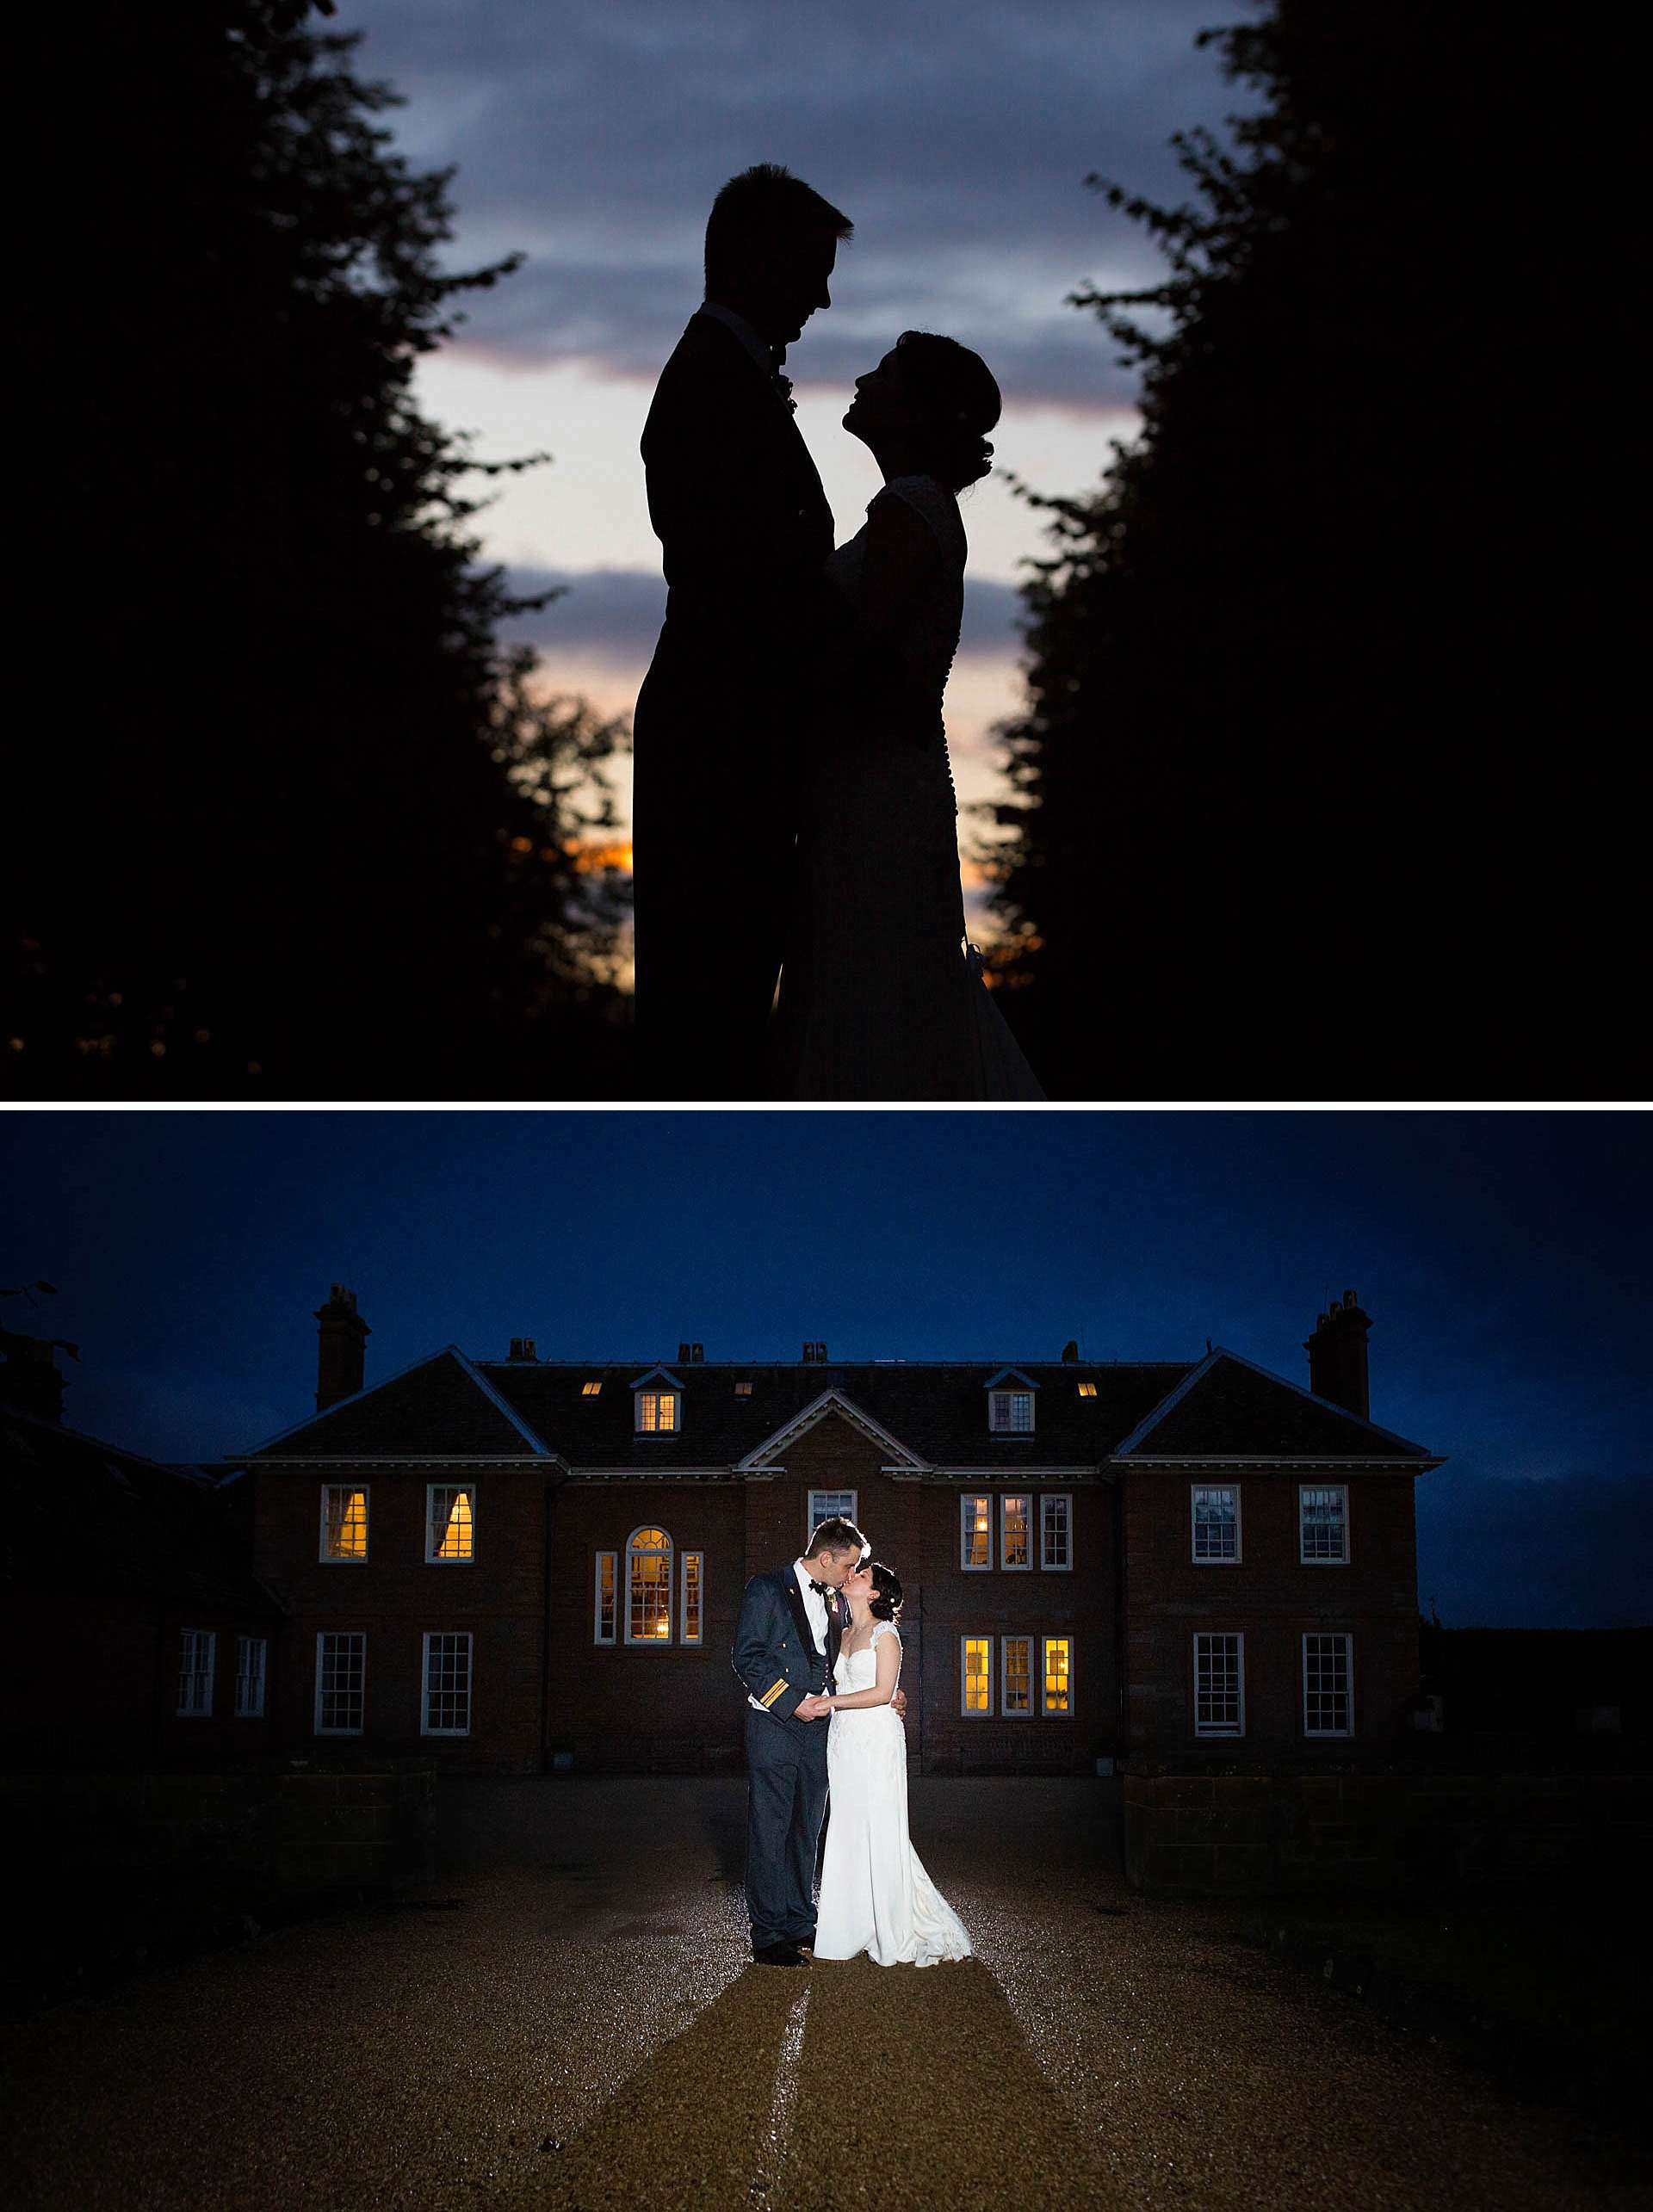 Poundon House wedding - evening wedding portraits